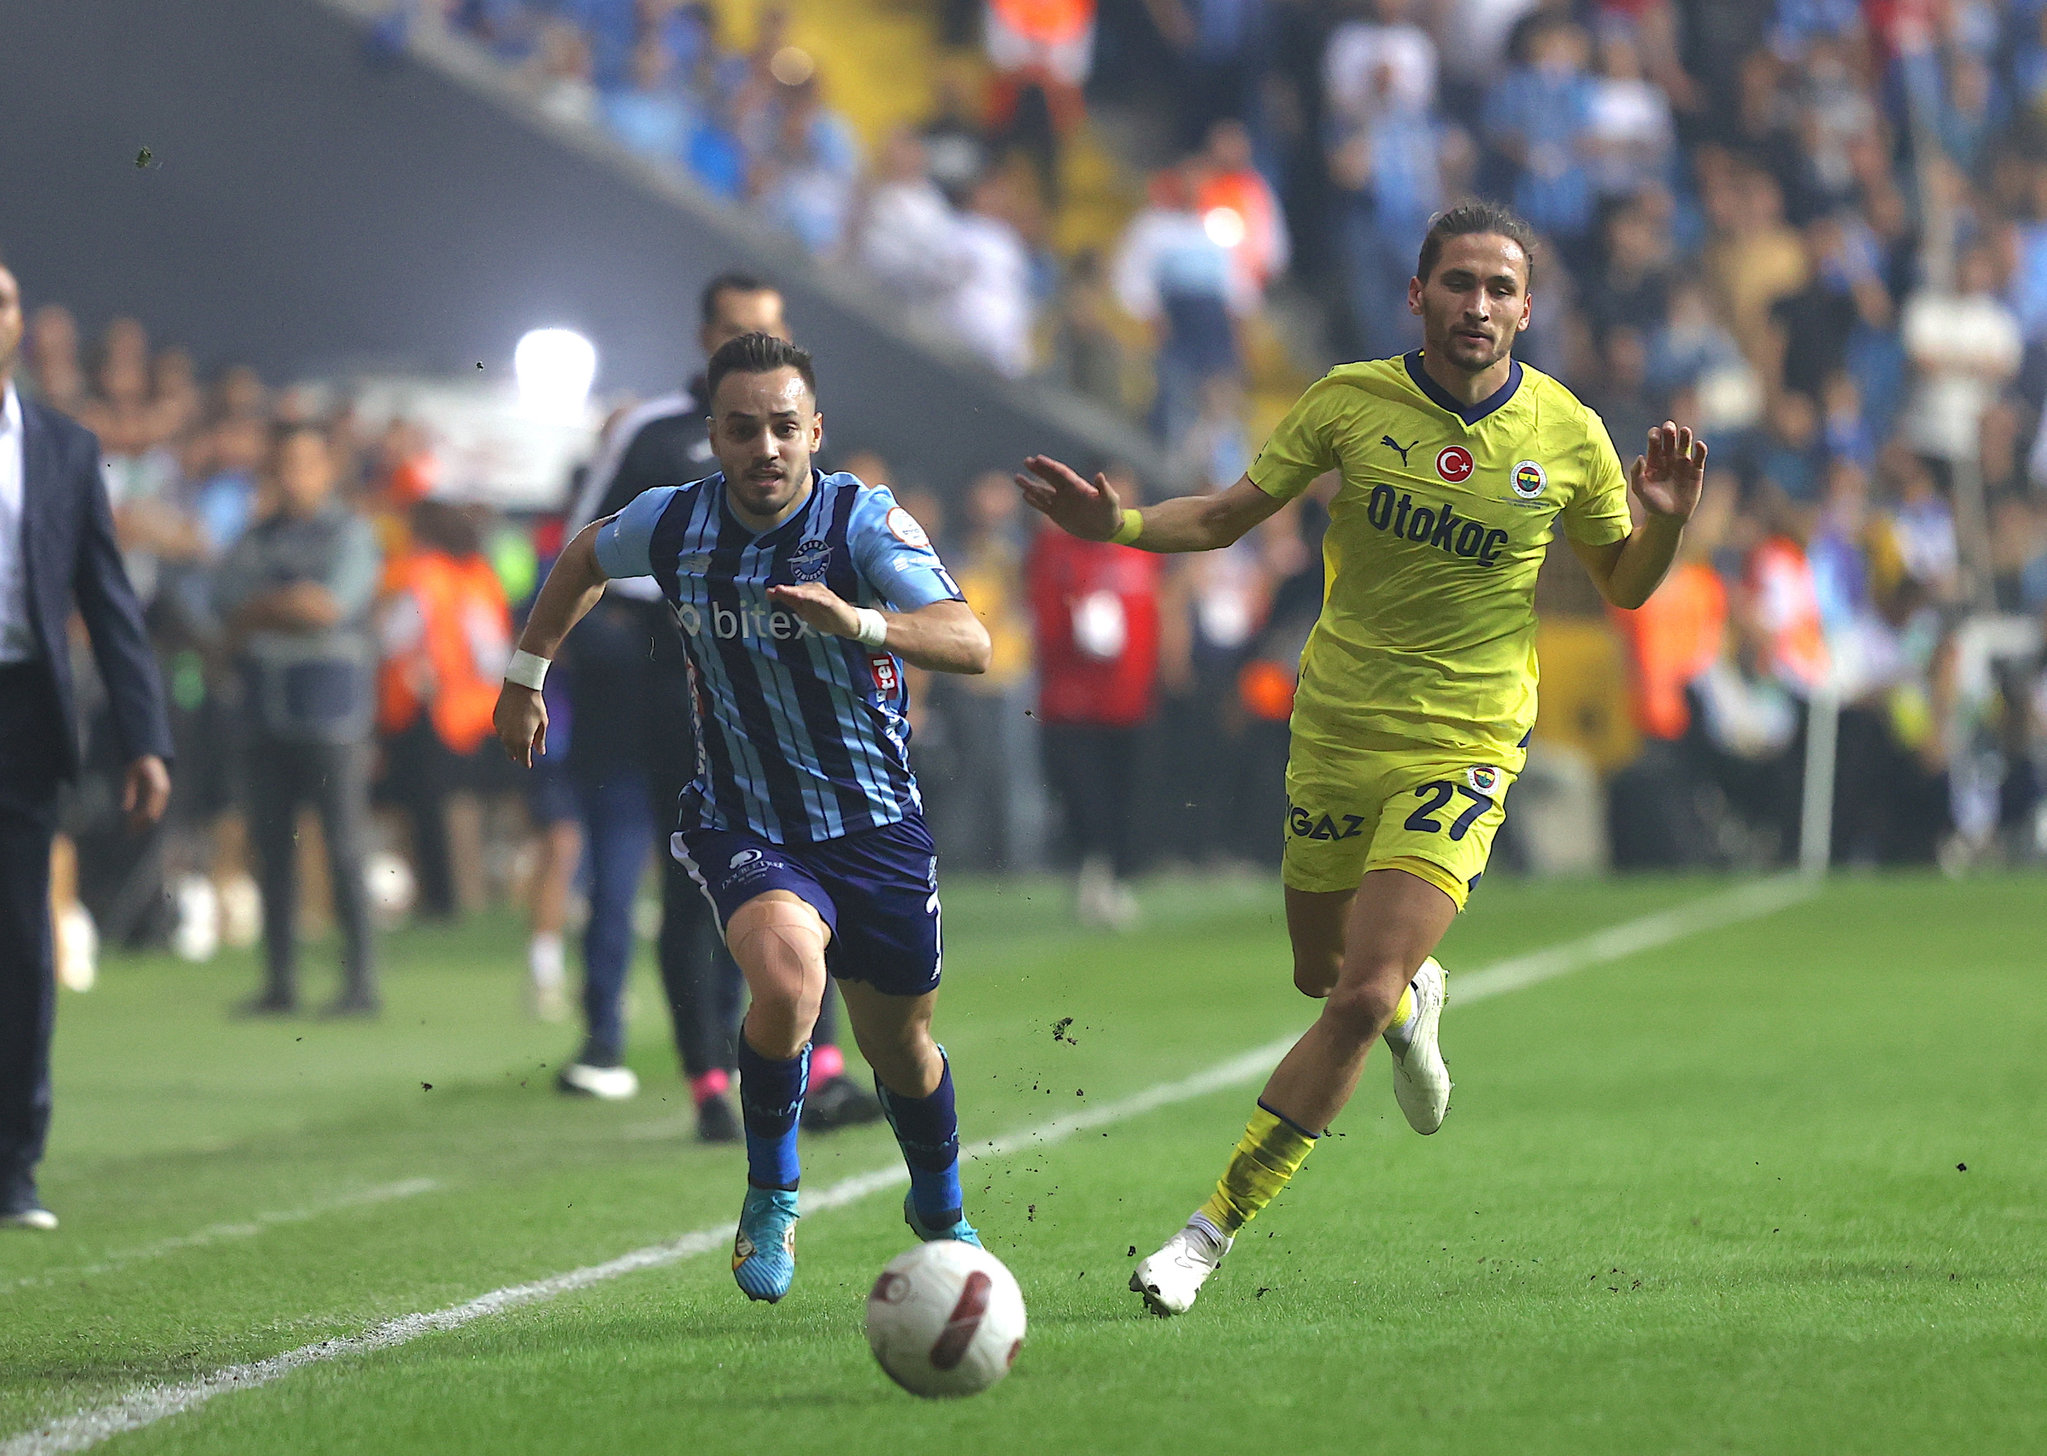 Miguel Crespo’nun menajerinden transfer açıklaması! Fenerbahçe’den ayrılacak mı?